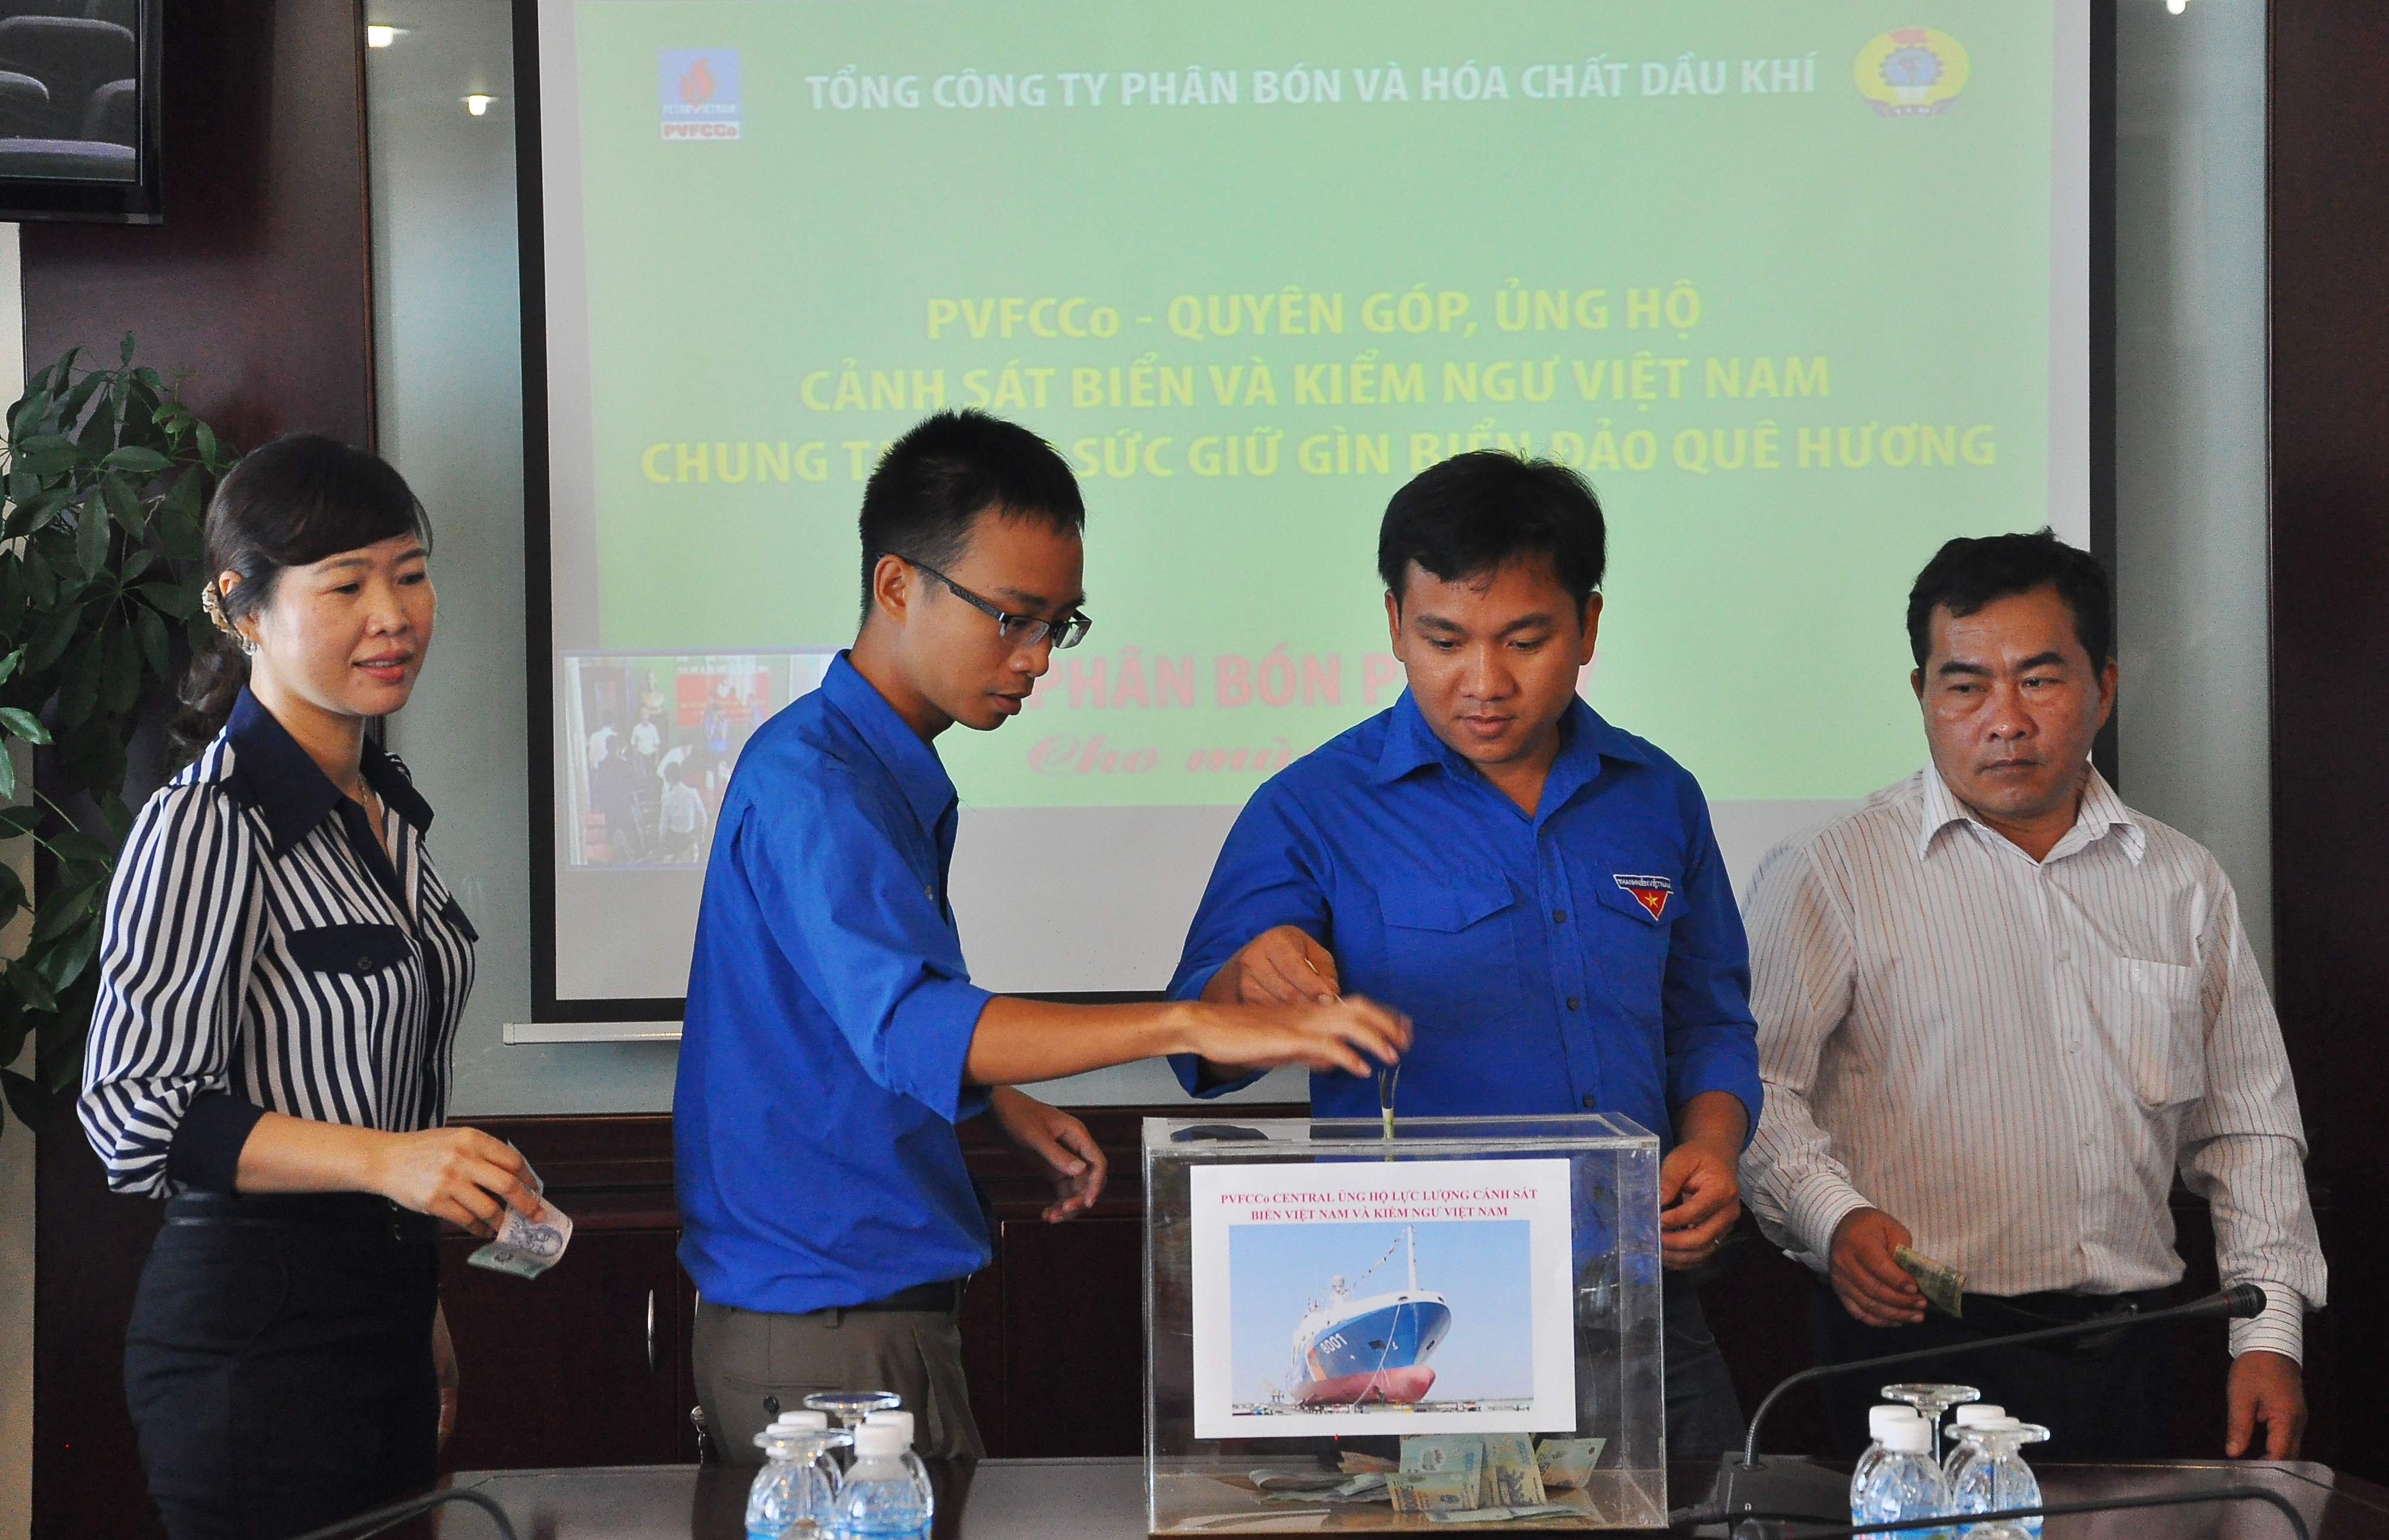 PVFCCo ủng hộ 300 triệu đồng cho  lực lượng Cảnh sát biển và Kiểm ngư Việt Nam